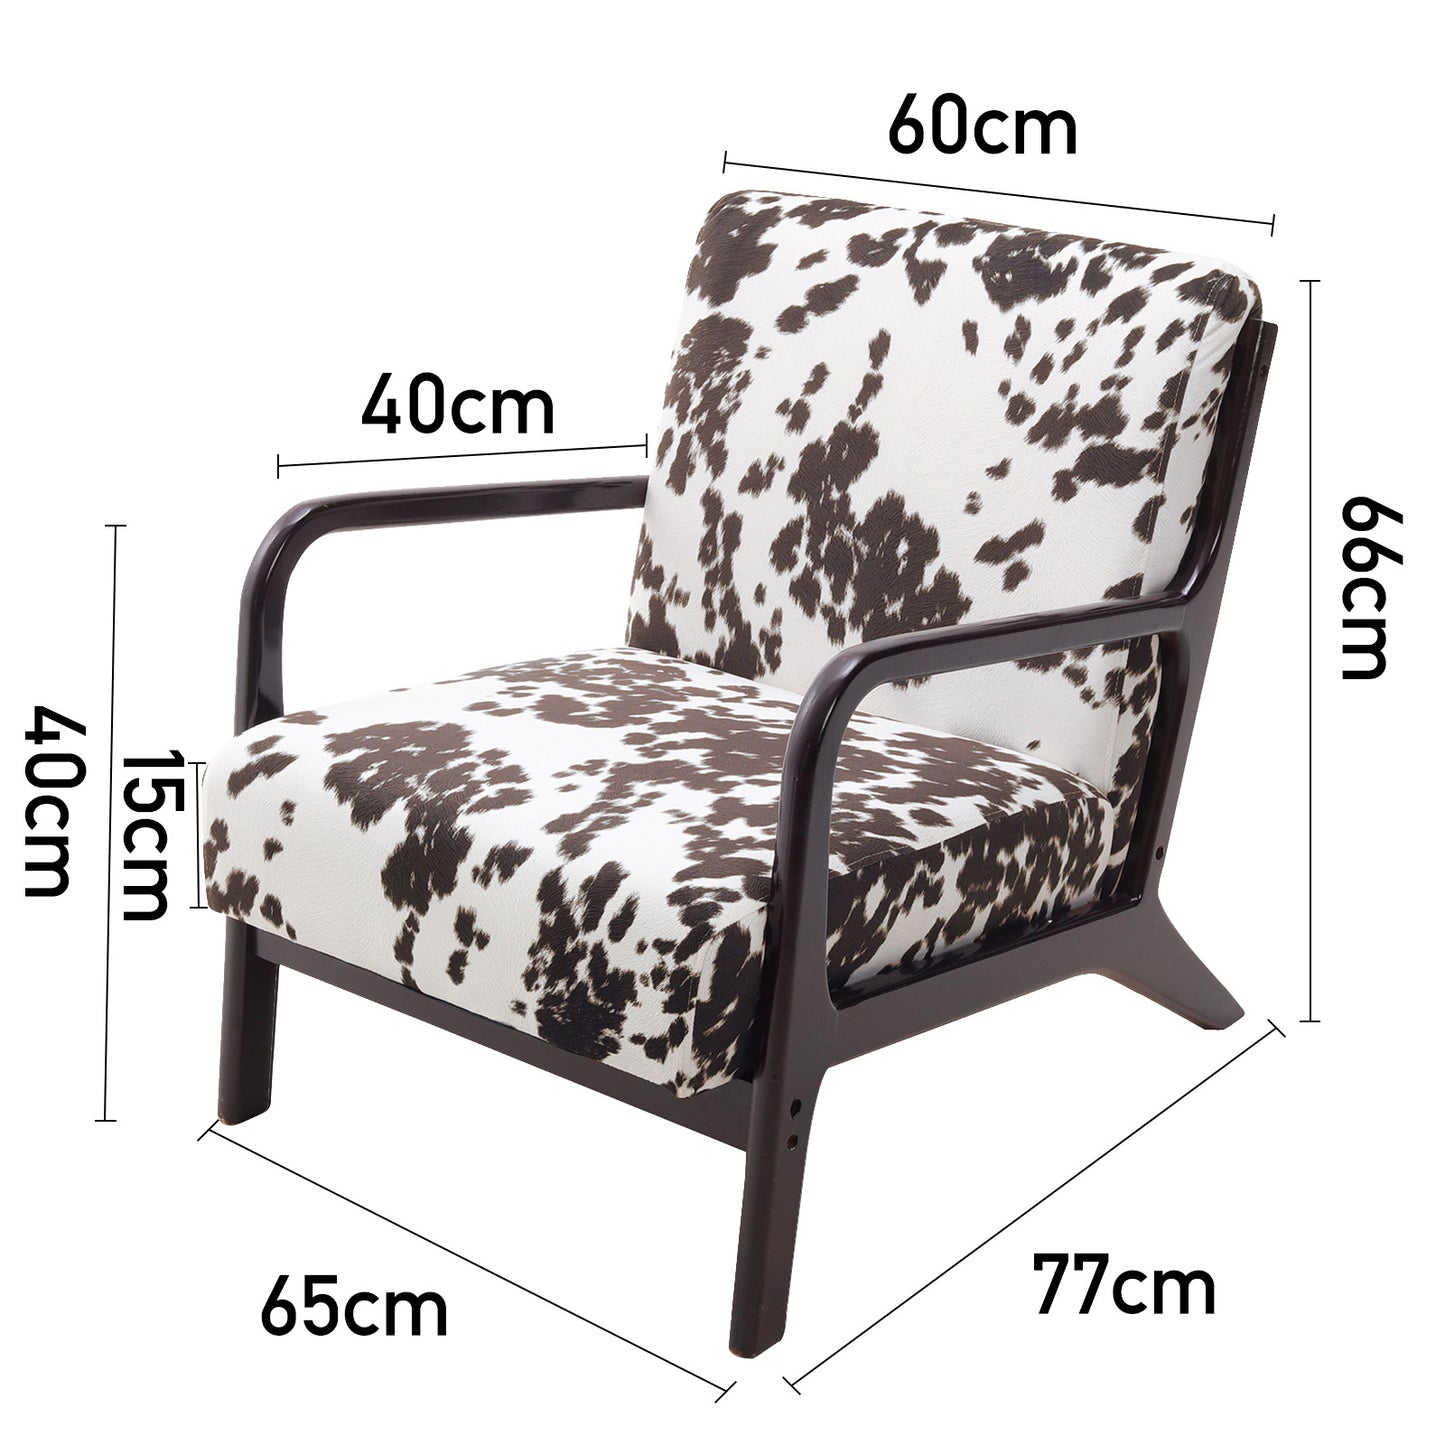 Black and White Spots Velvet Upholstered Armchair